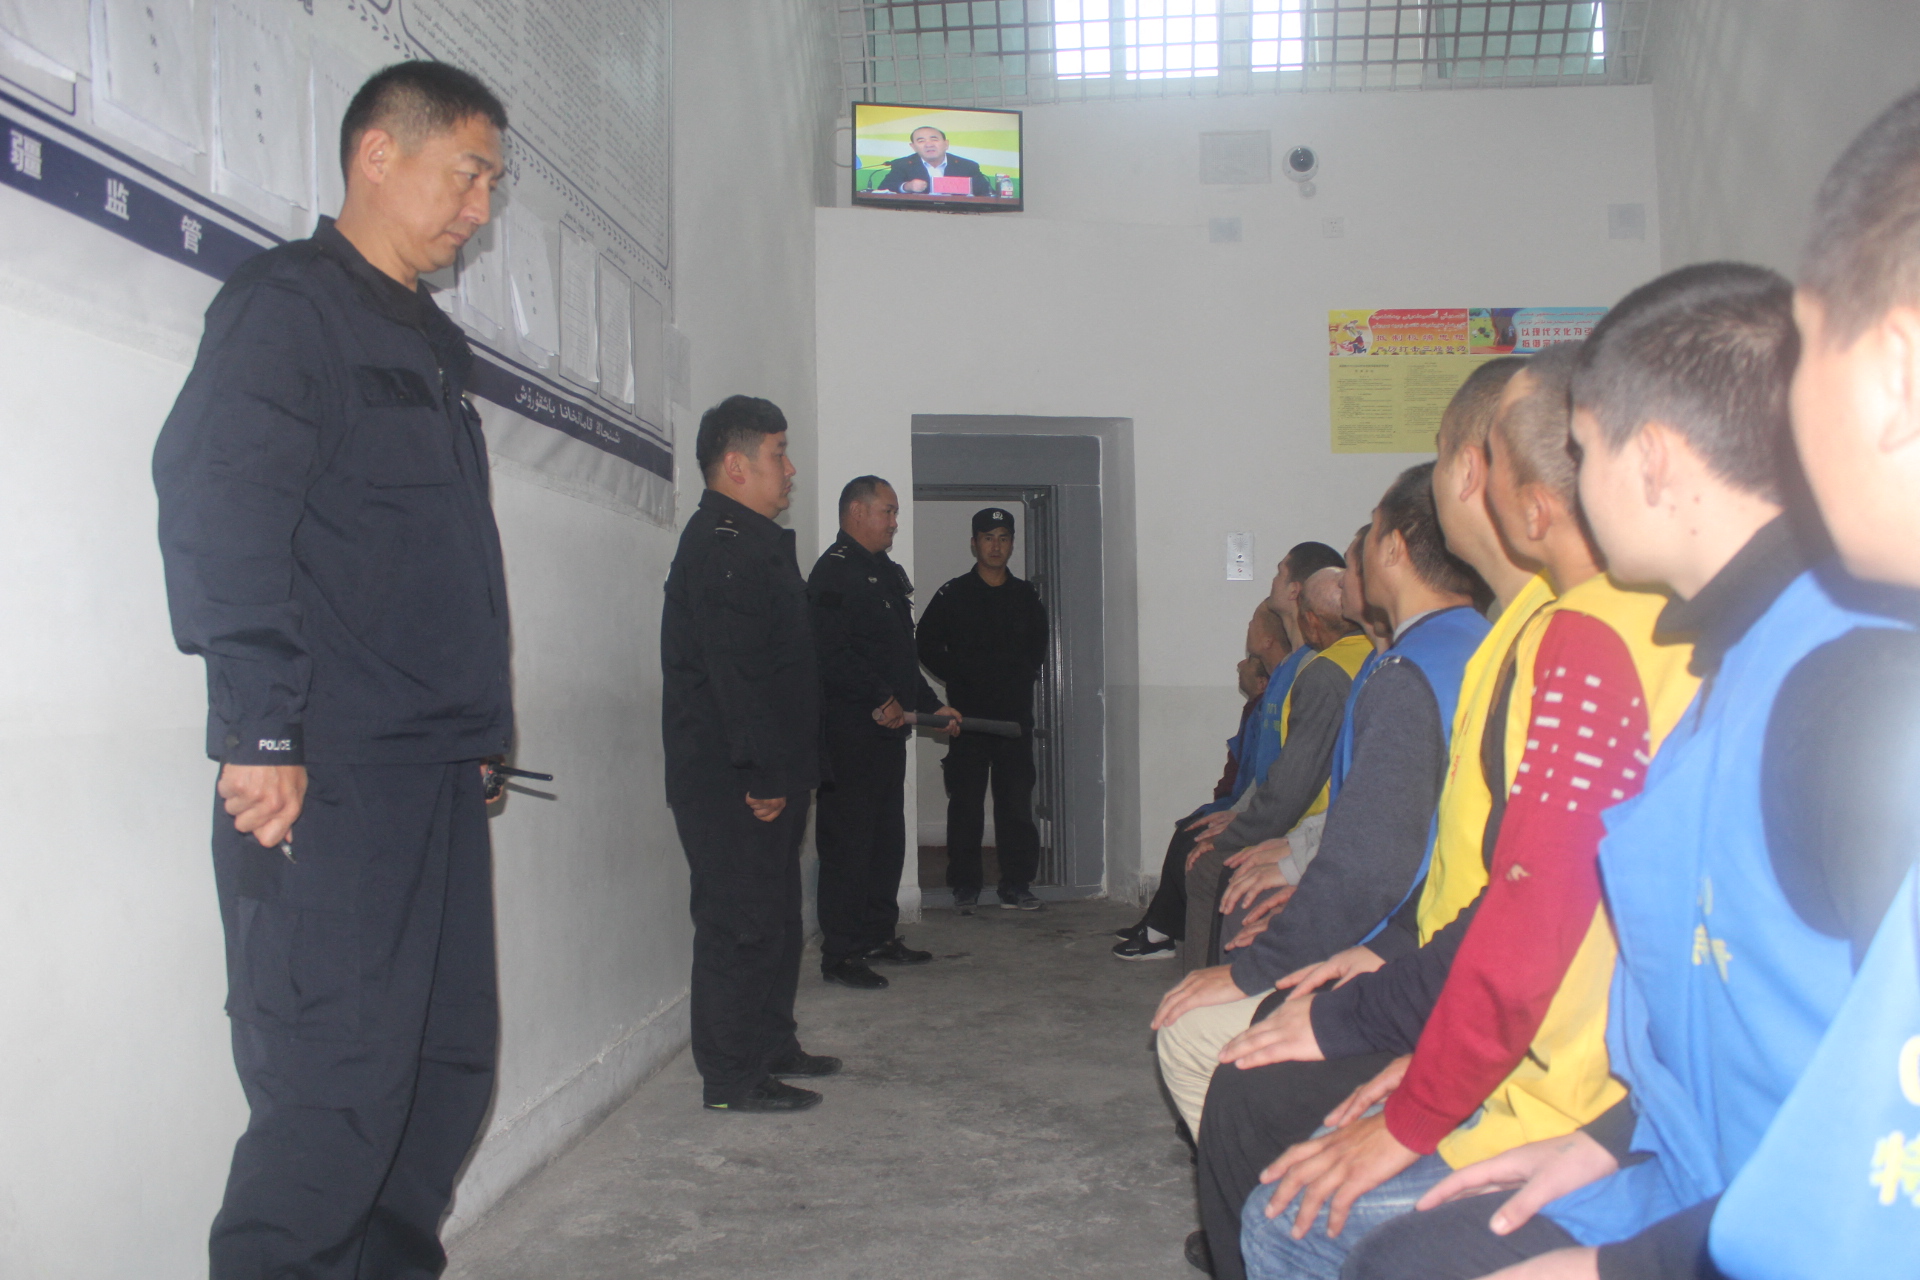 ENSZ: Emberiség elleni bűntett lehet, amit Kína csinál az ujgurokkal